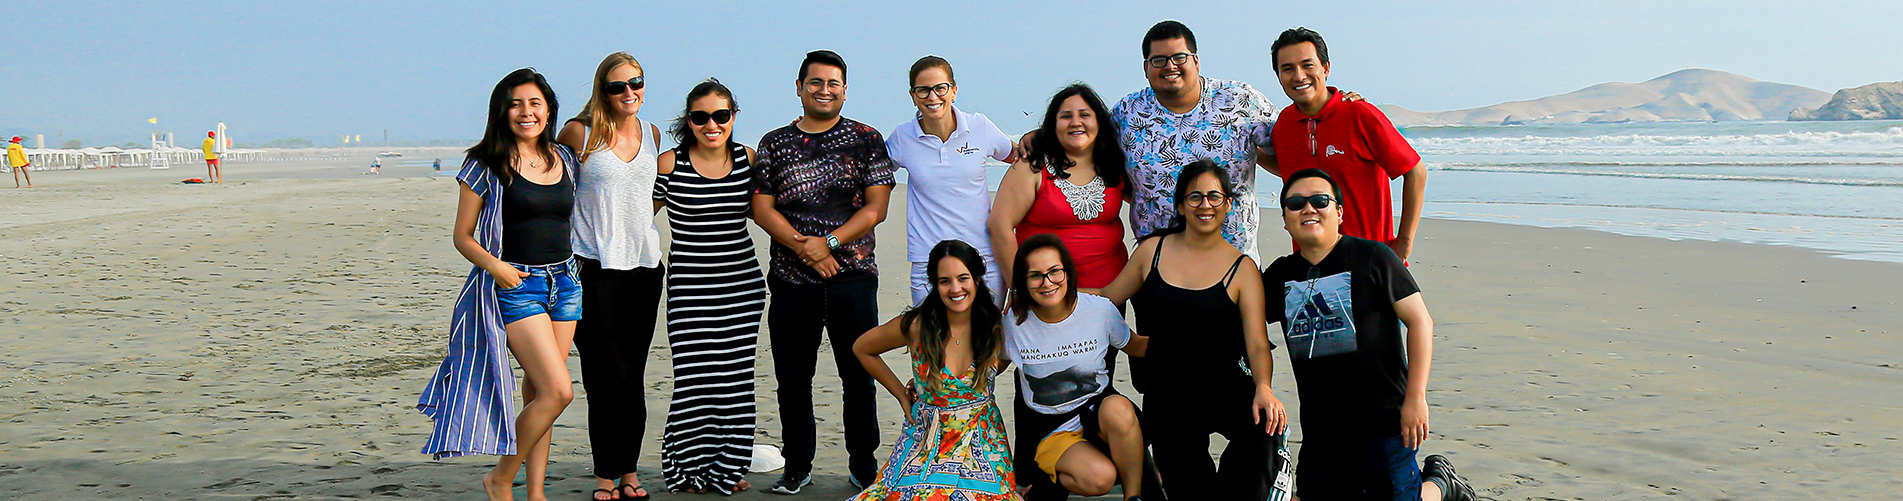 Conozca los perfiles de estos emprendedores sociales peruanos